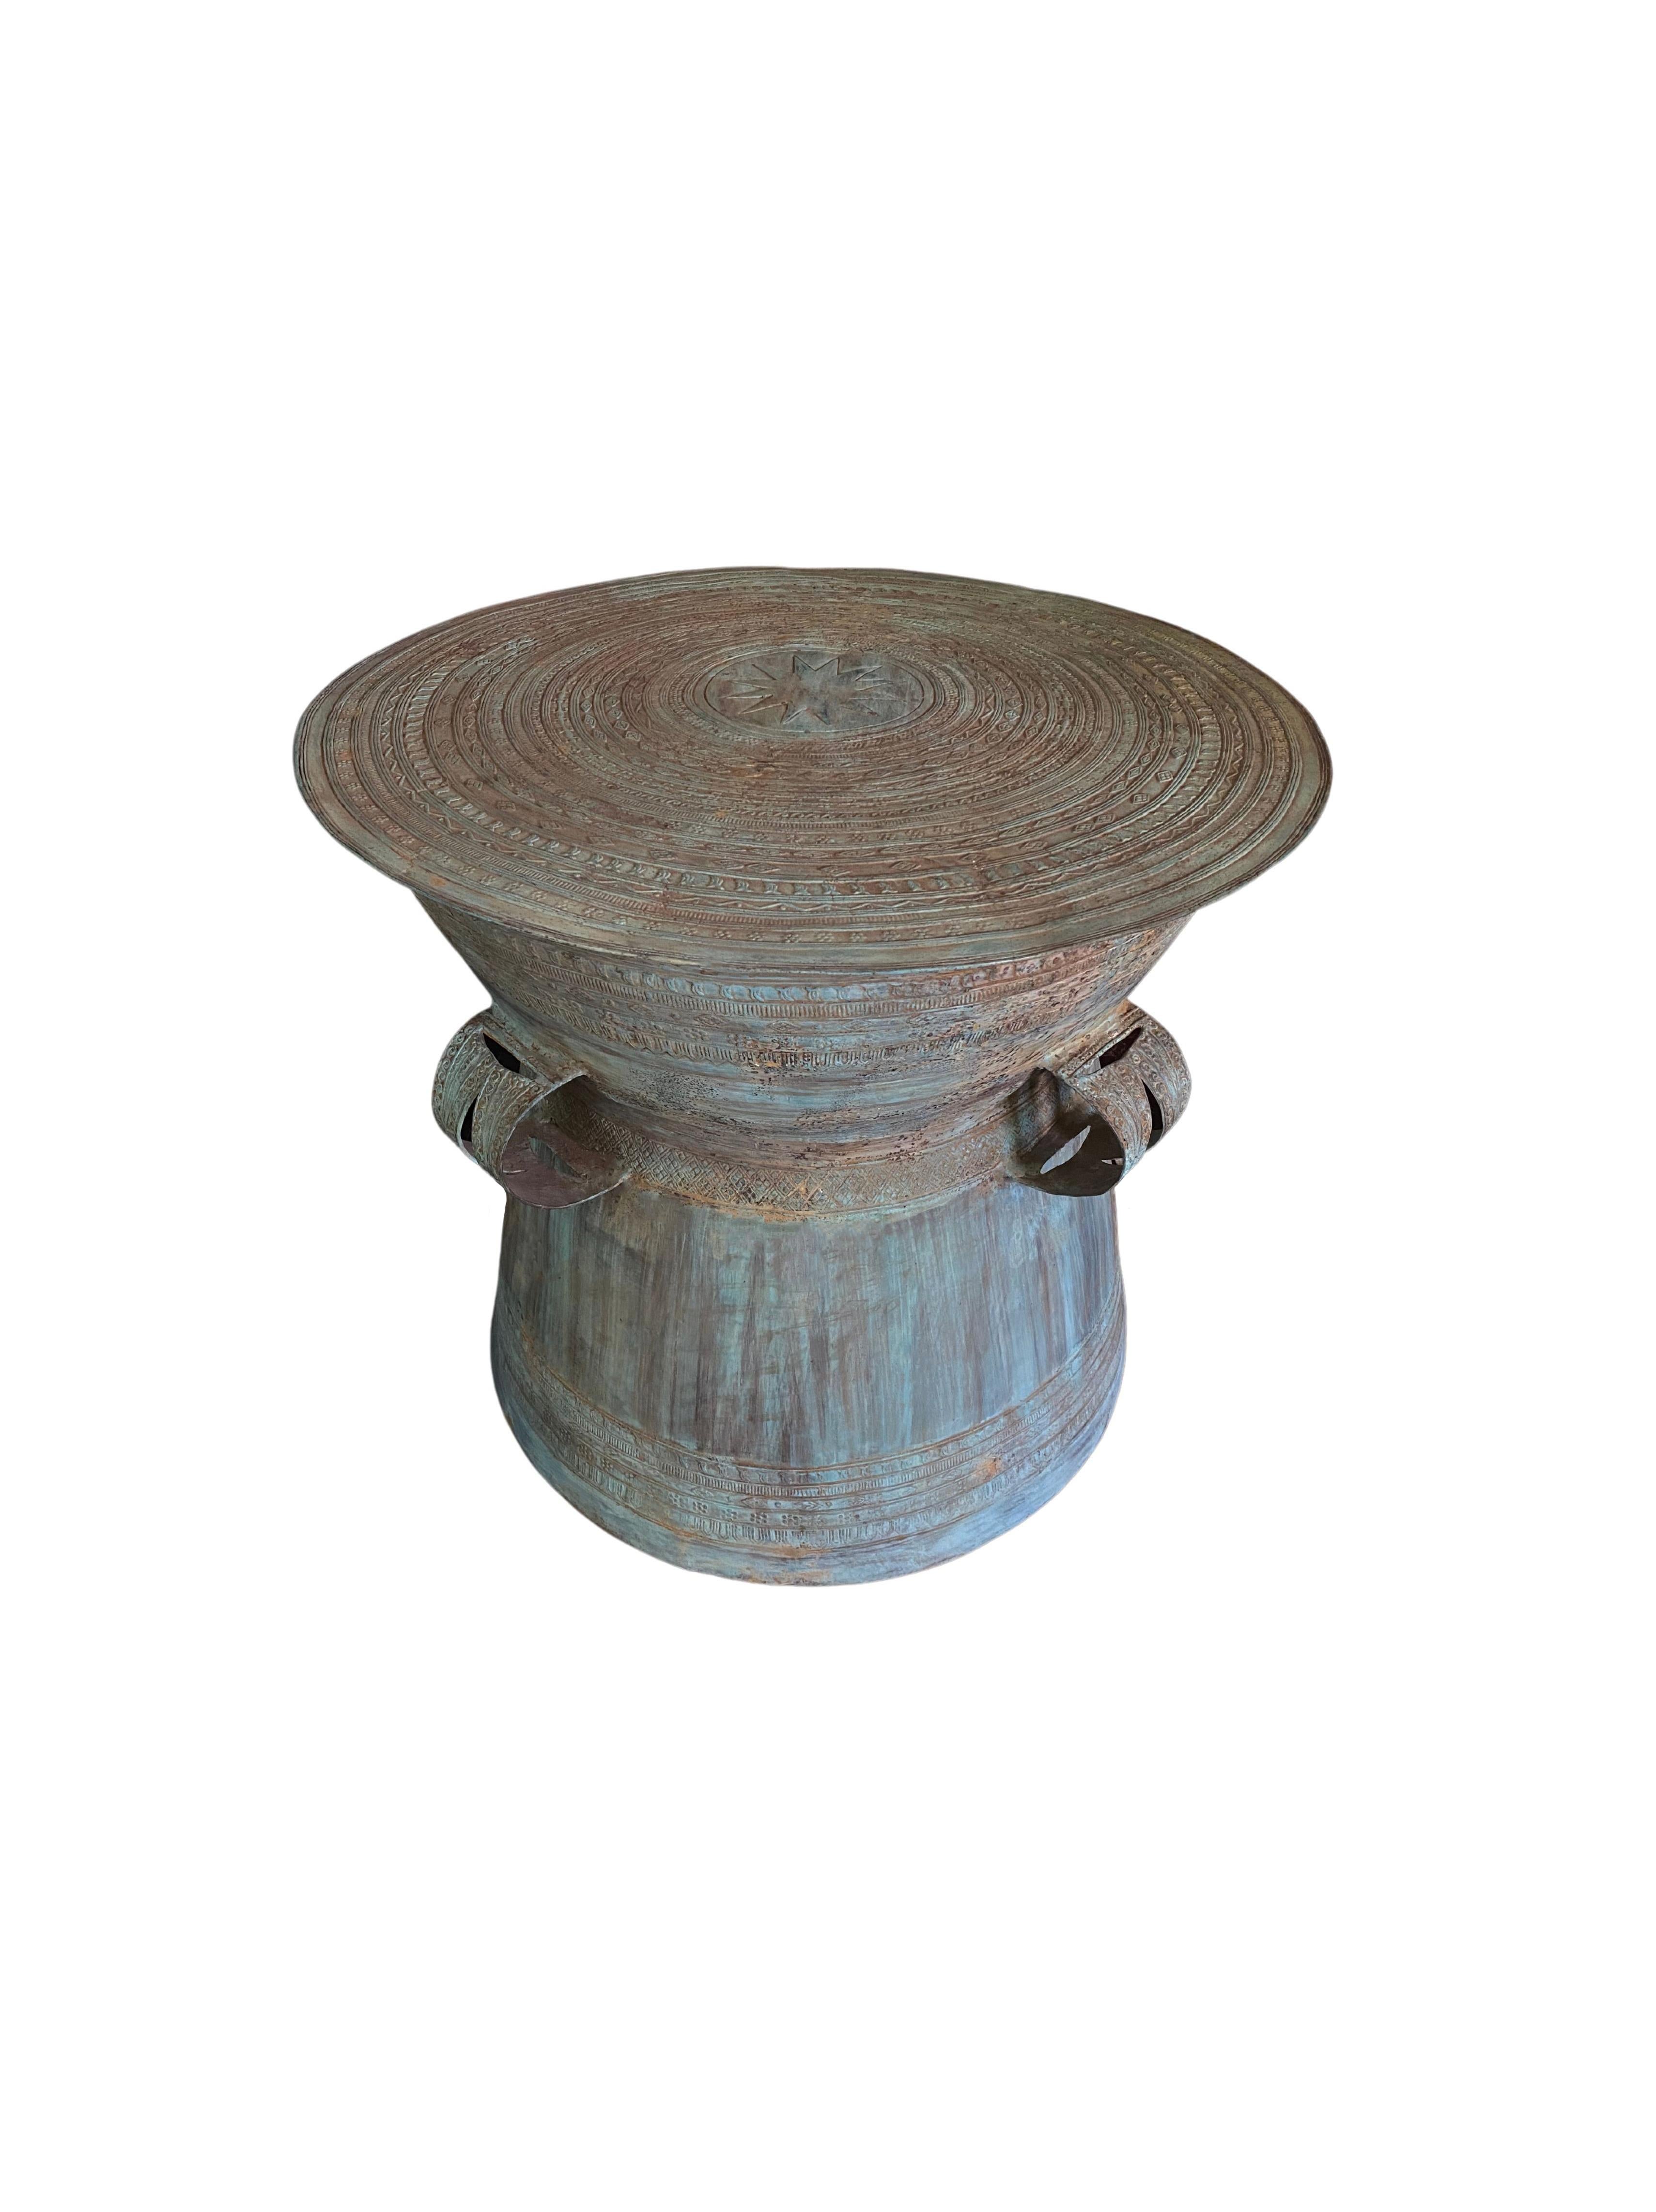 Ce tambour en fonte et en bronze s'inspire des tambours de pluie de l'Asie du Sud-Est, en particulier ceux que l'on trouve en Birmanie, au Laos et dans certaines îles orientales de l'Indonésie. Ce tambour comporte trois poignées gravées. Ses côtés